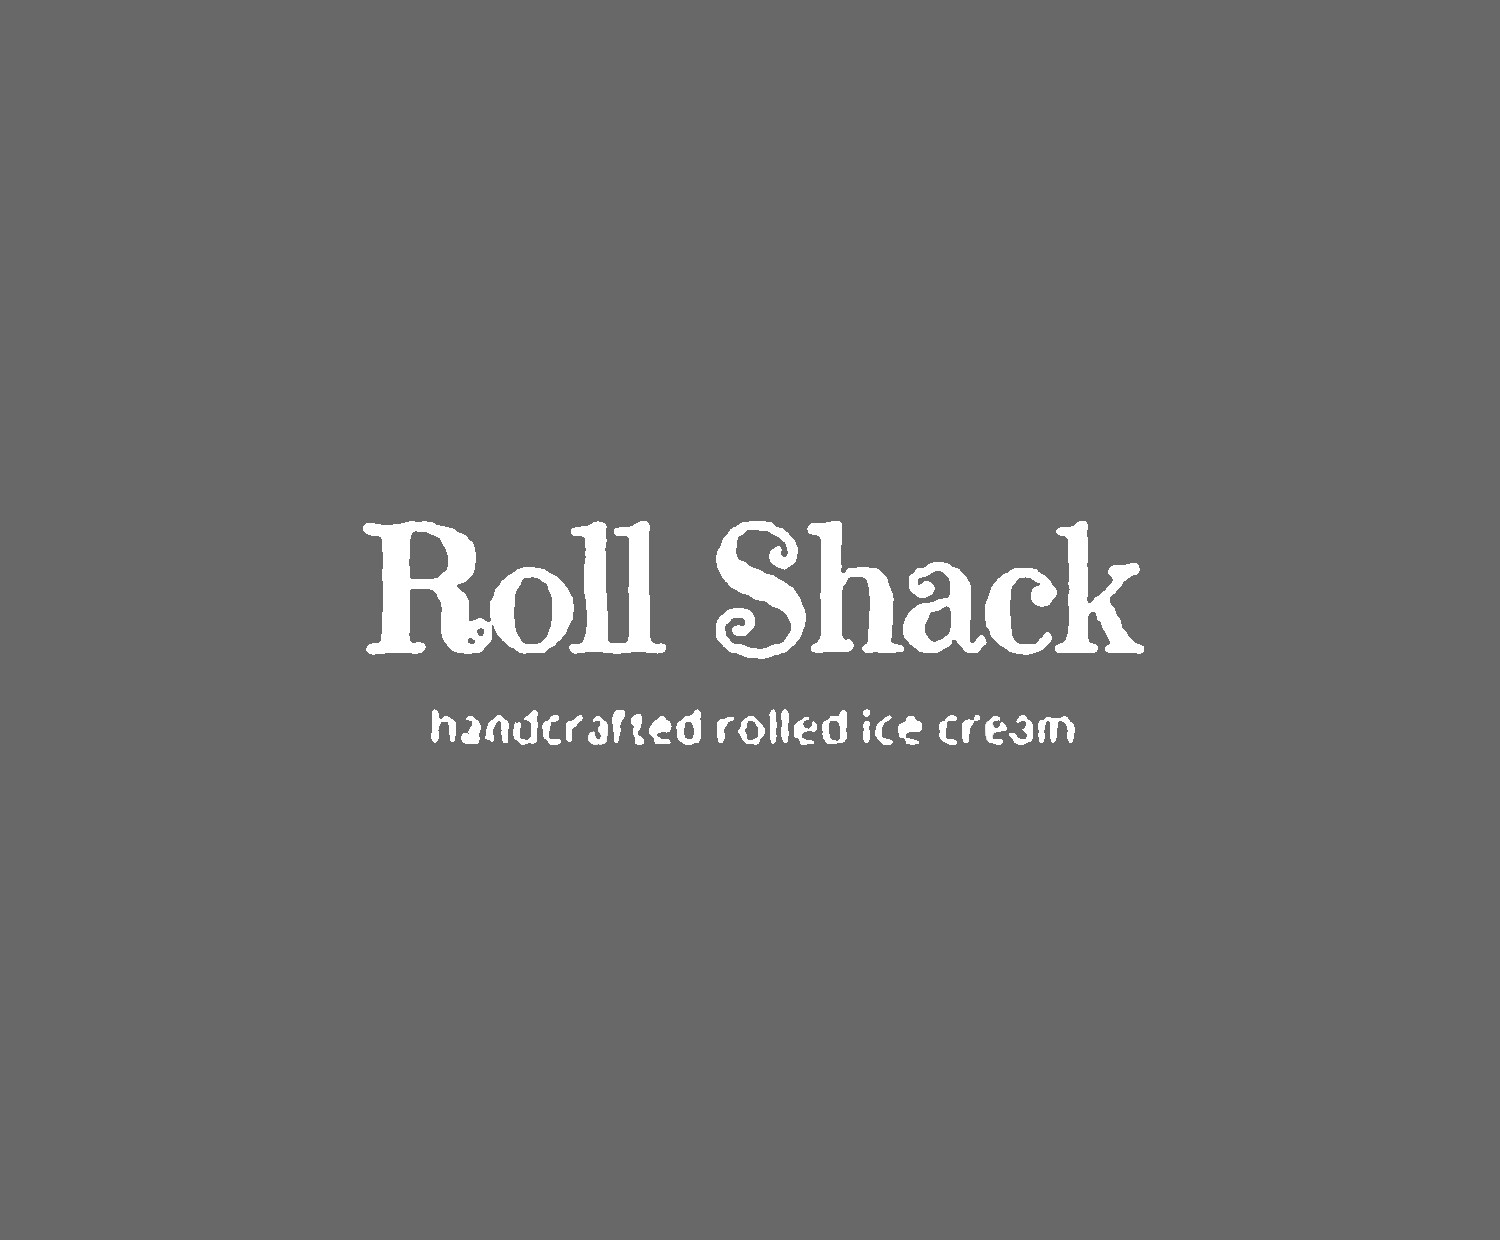 Roll Shack